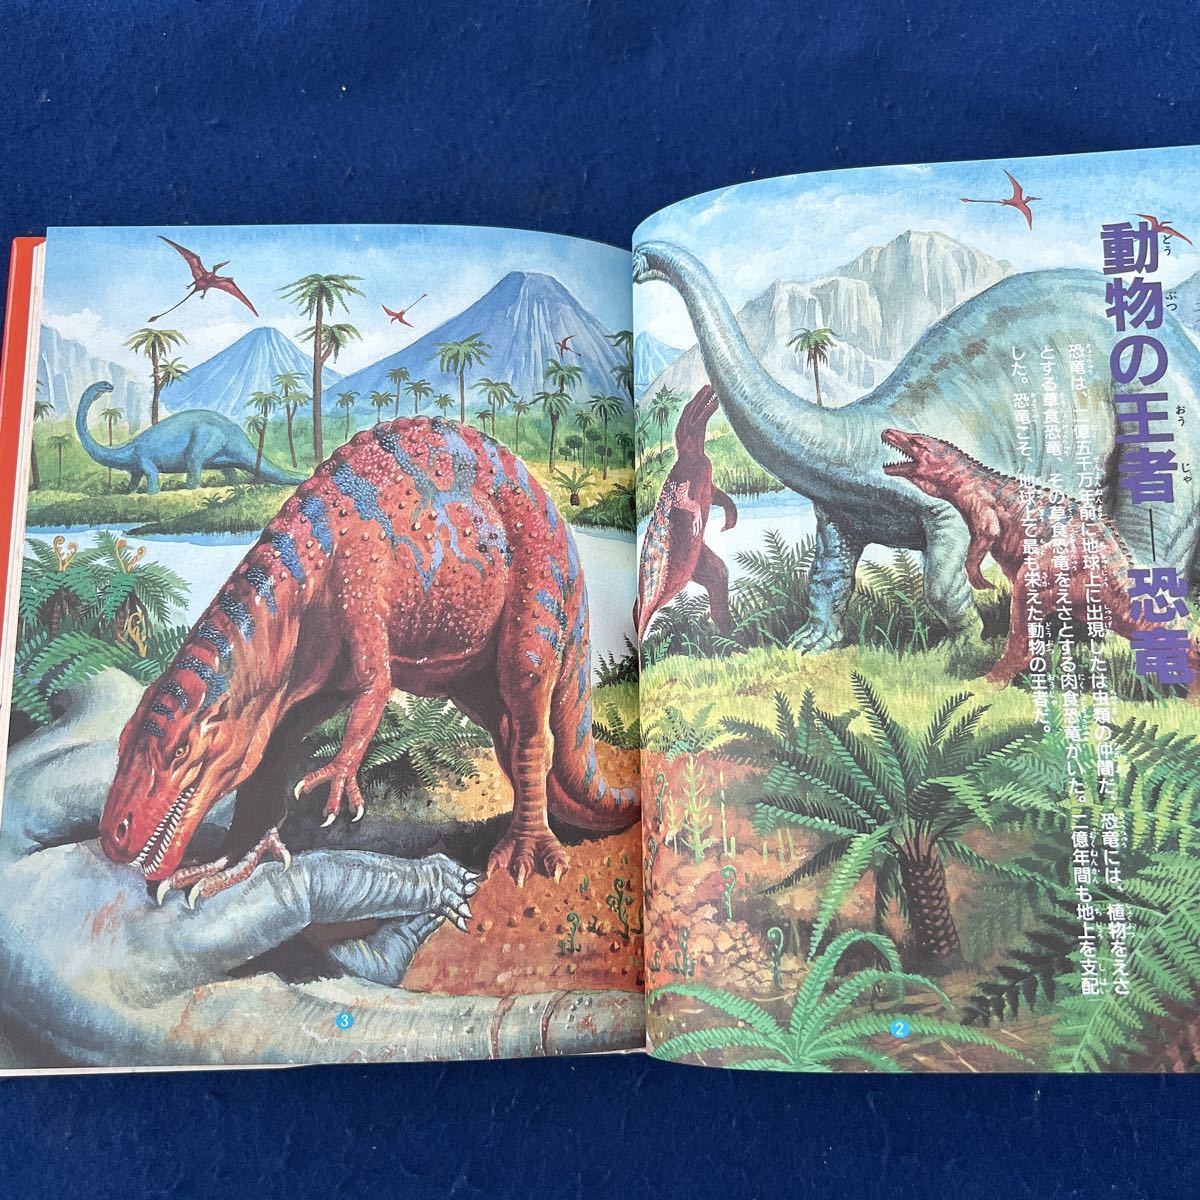  huge dinosaur is why disappeared .!?* dinosaur ... mystery * Gakken * Gakken do gold series 